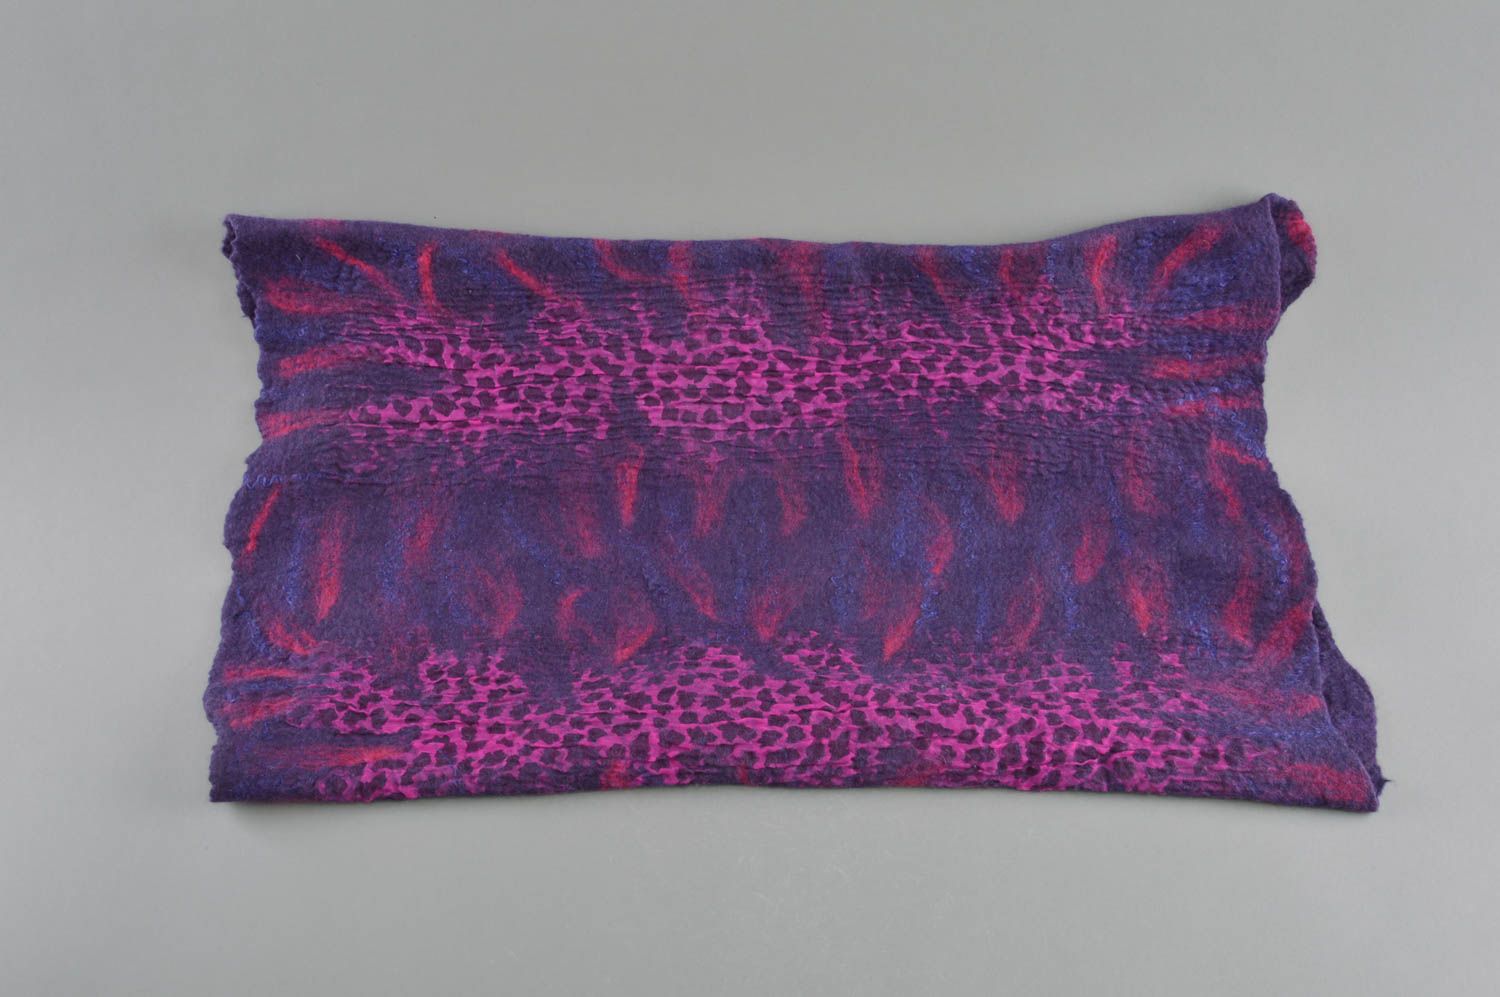 Шарф в технике валяния из шерсти и шелка фиолетовый темный стильный хэнд мейд фото 2